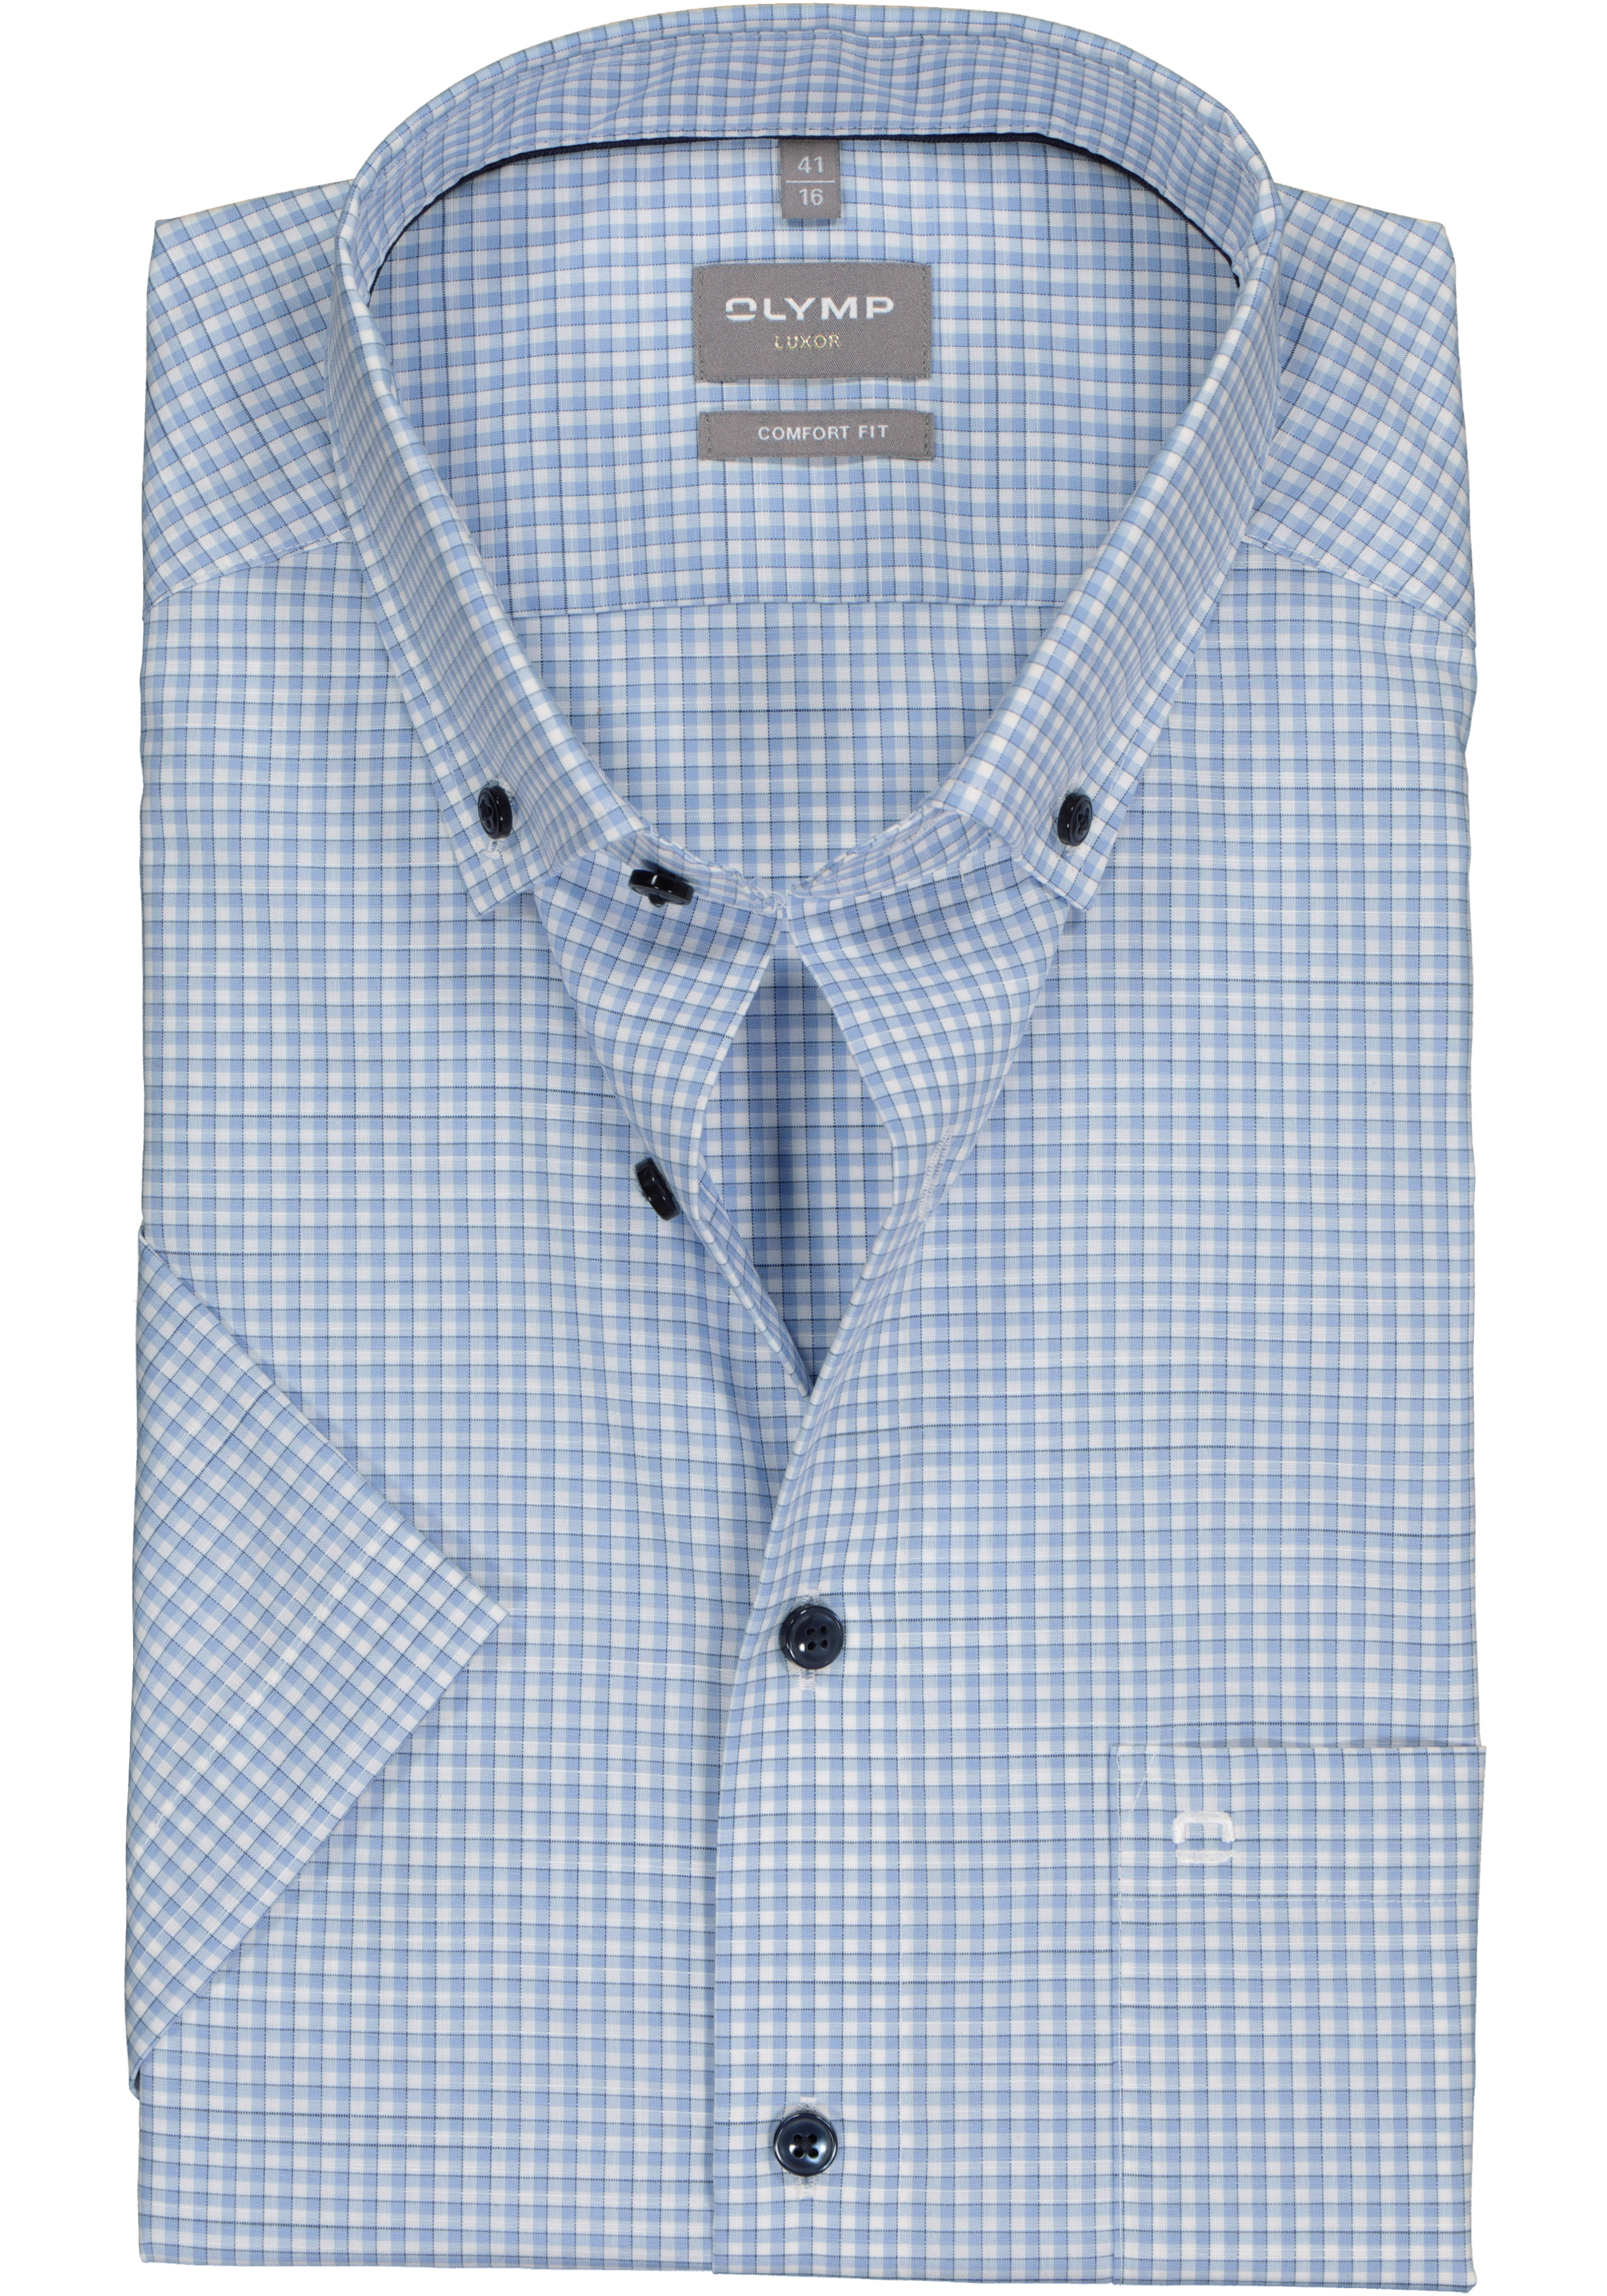 OLYMP comfort fit overhemd, korte mouw, popeline, lichtblauw met wit geruit